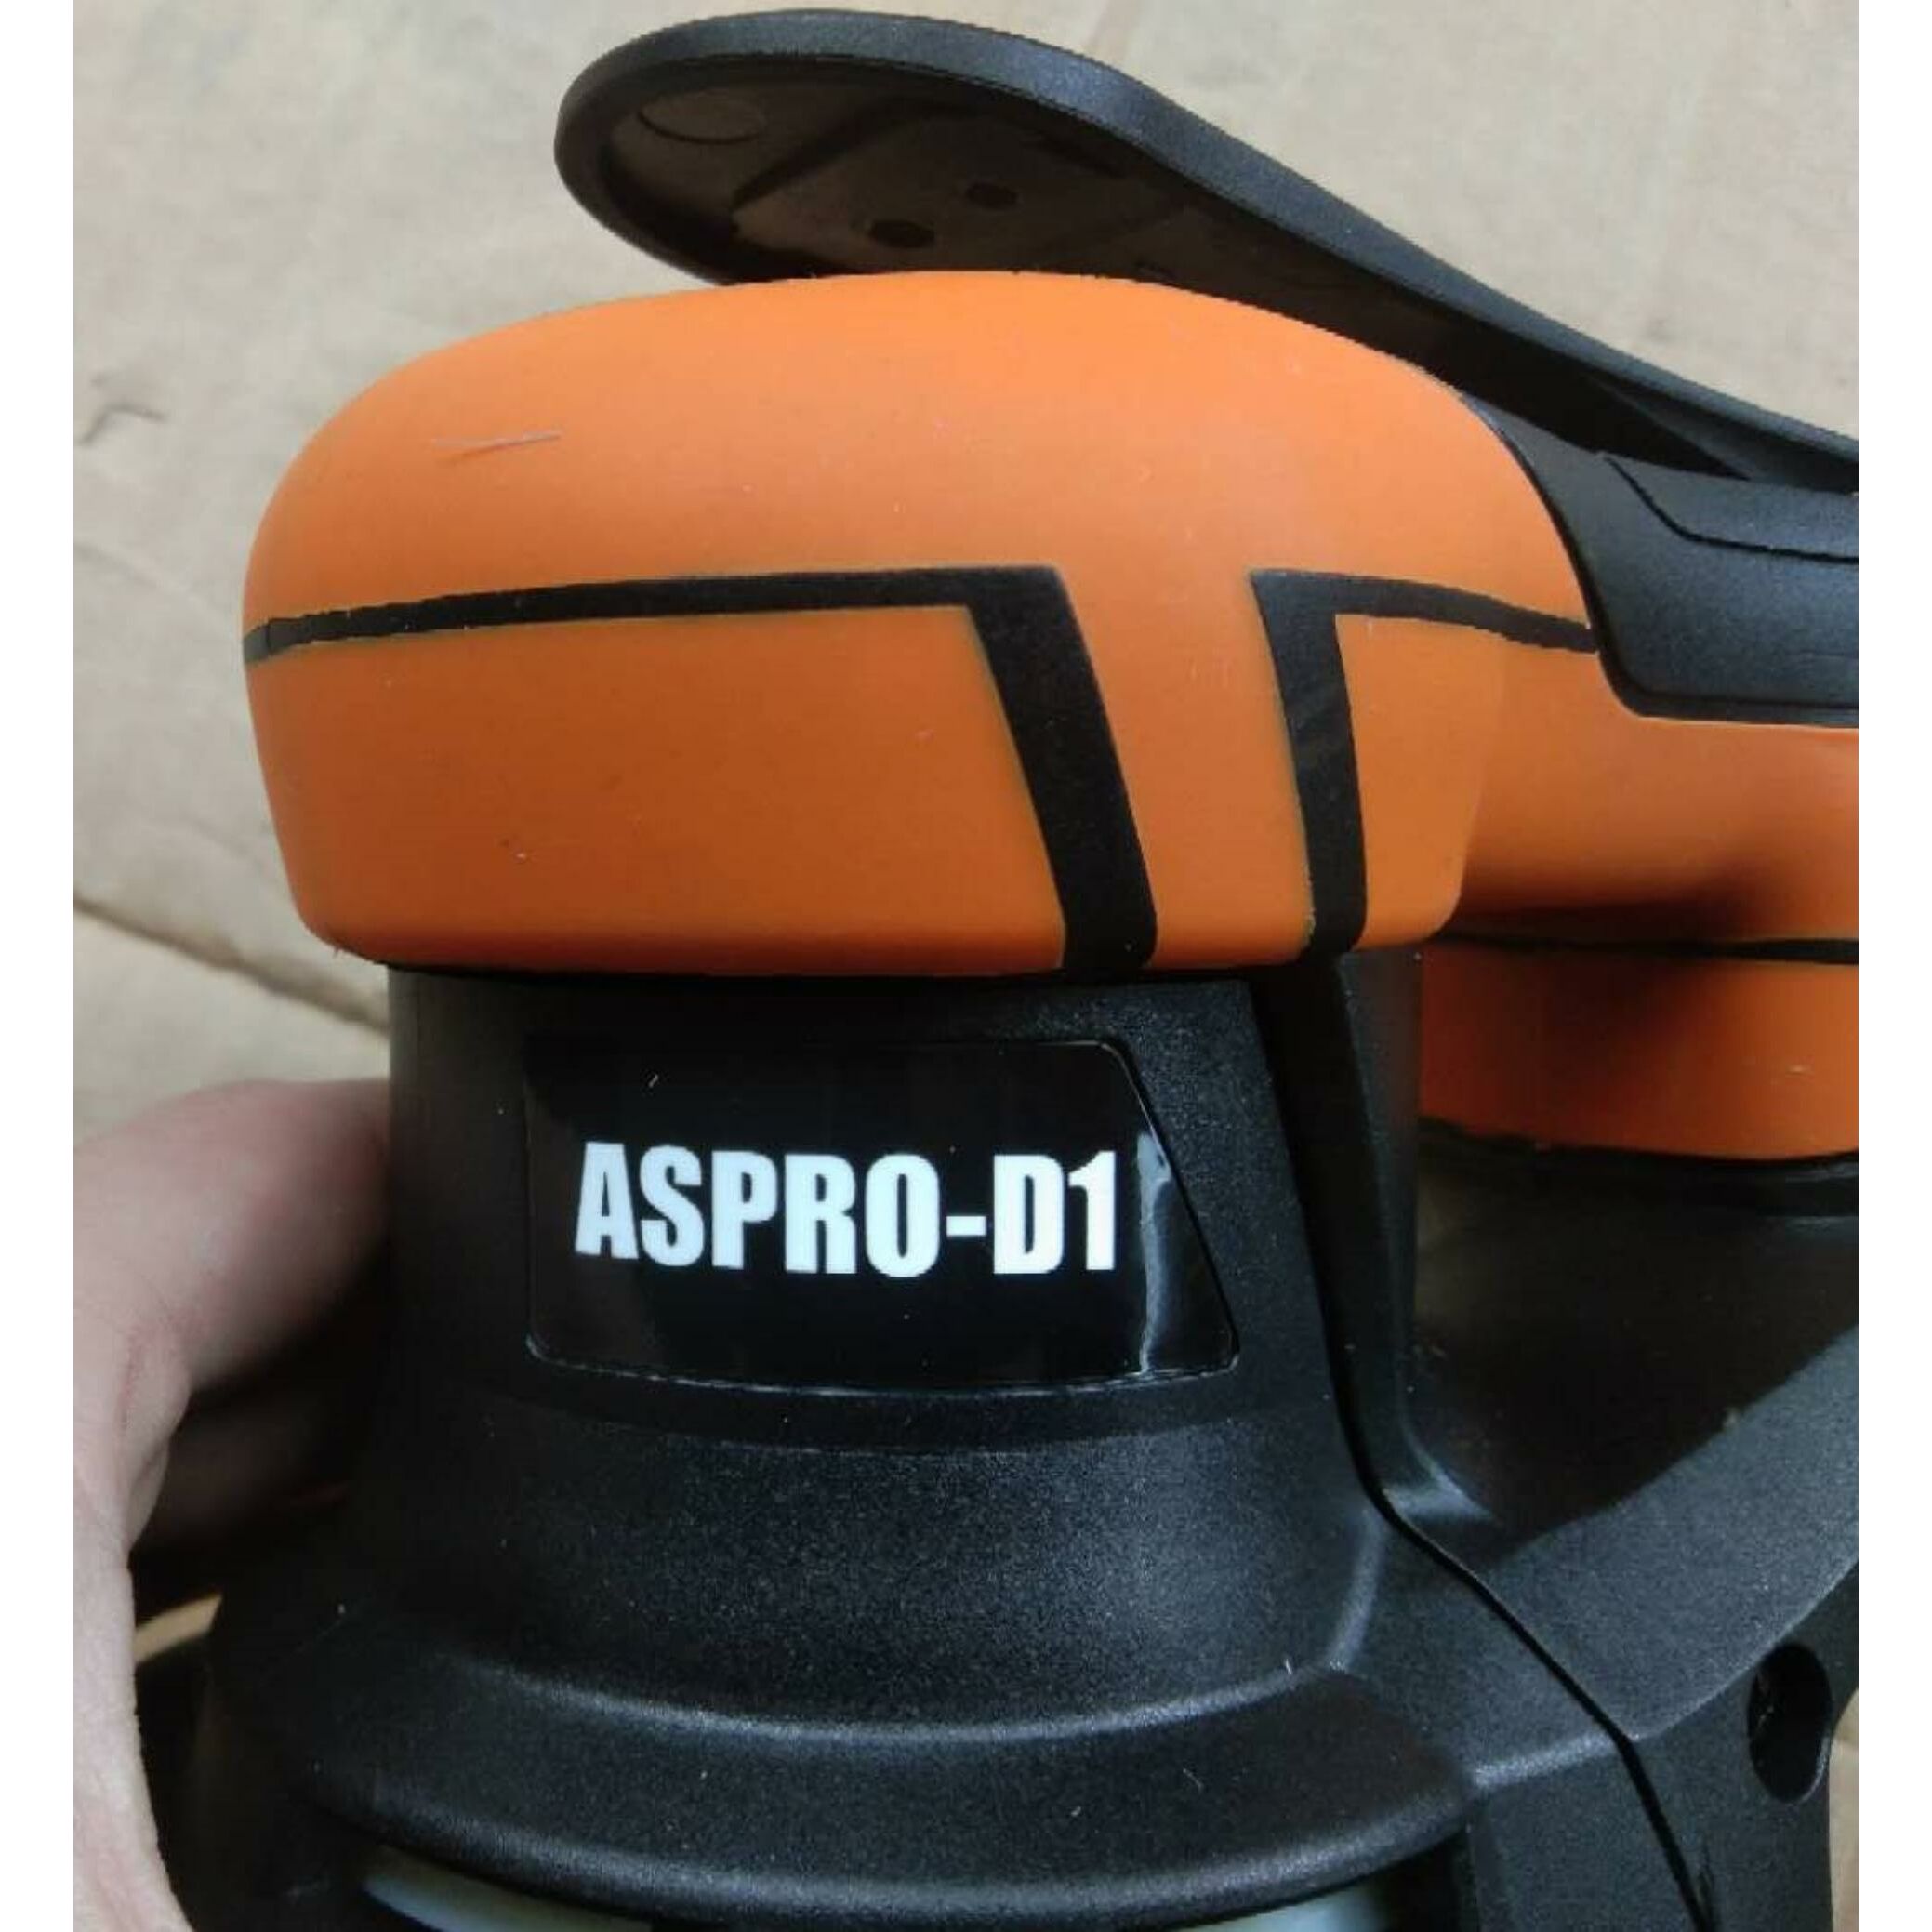 Aspro c8